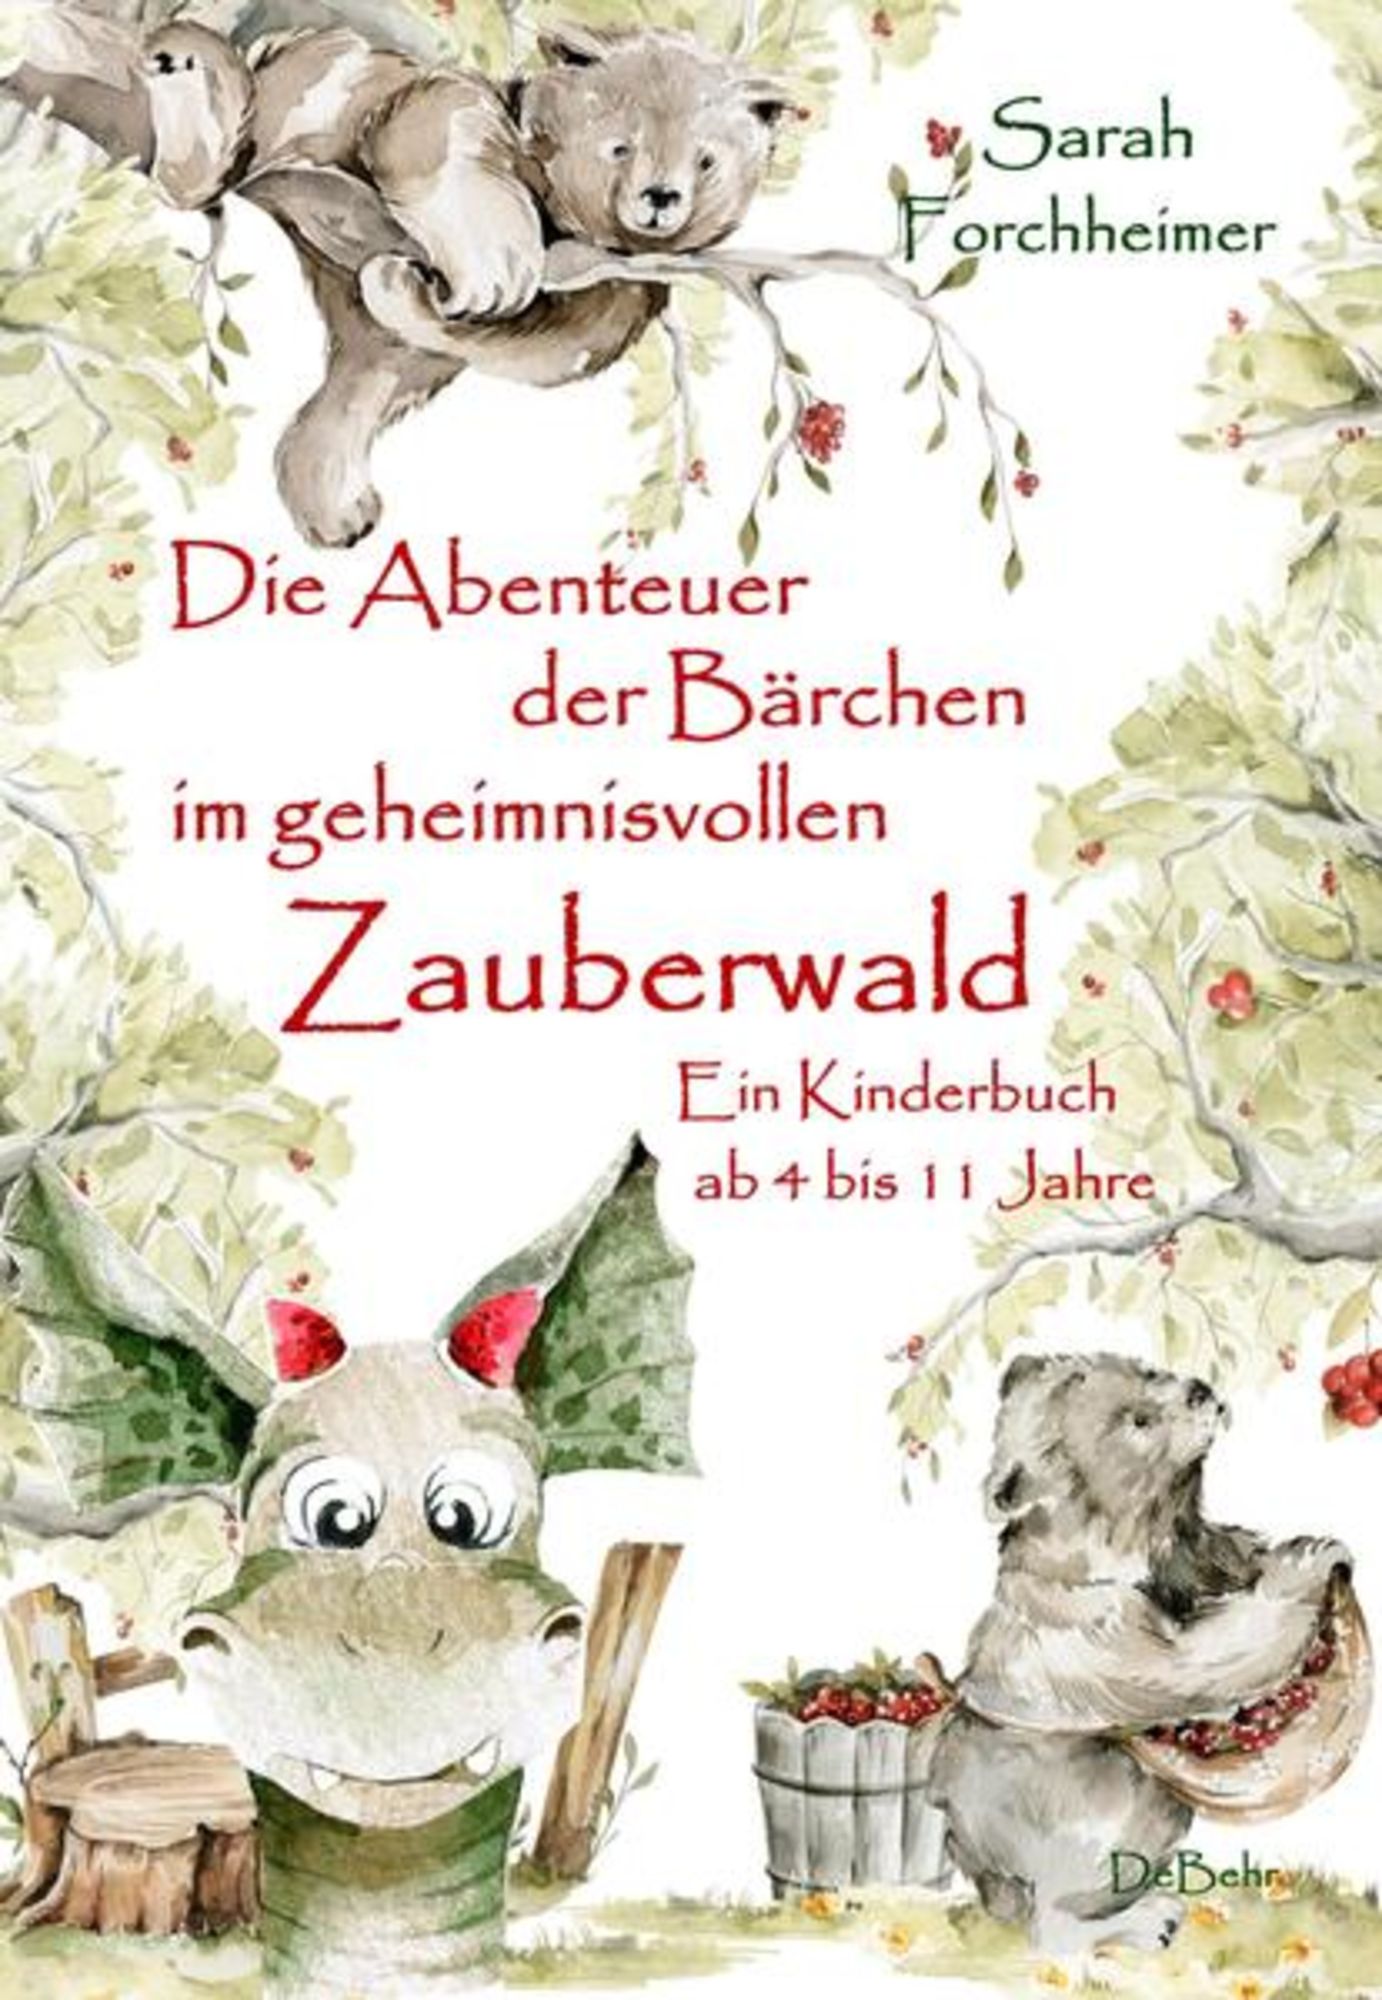 4 Forchheimer\' Ein im Abenteuer Die Bärchen ab Jahre\' 11 - \'Sarah geheimnisvollen bis Zauberwald - - Kinderbuch Buch von der \'978-3-9872702-1-5\'